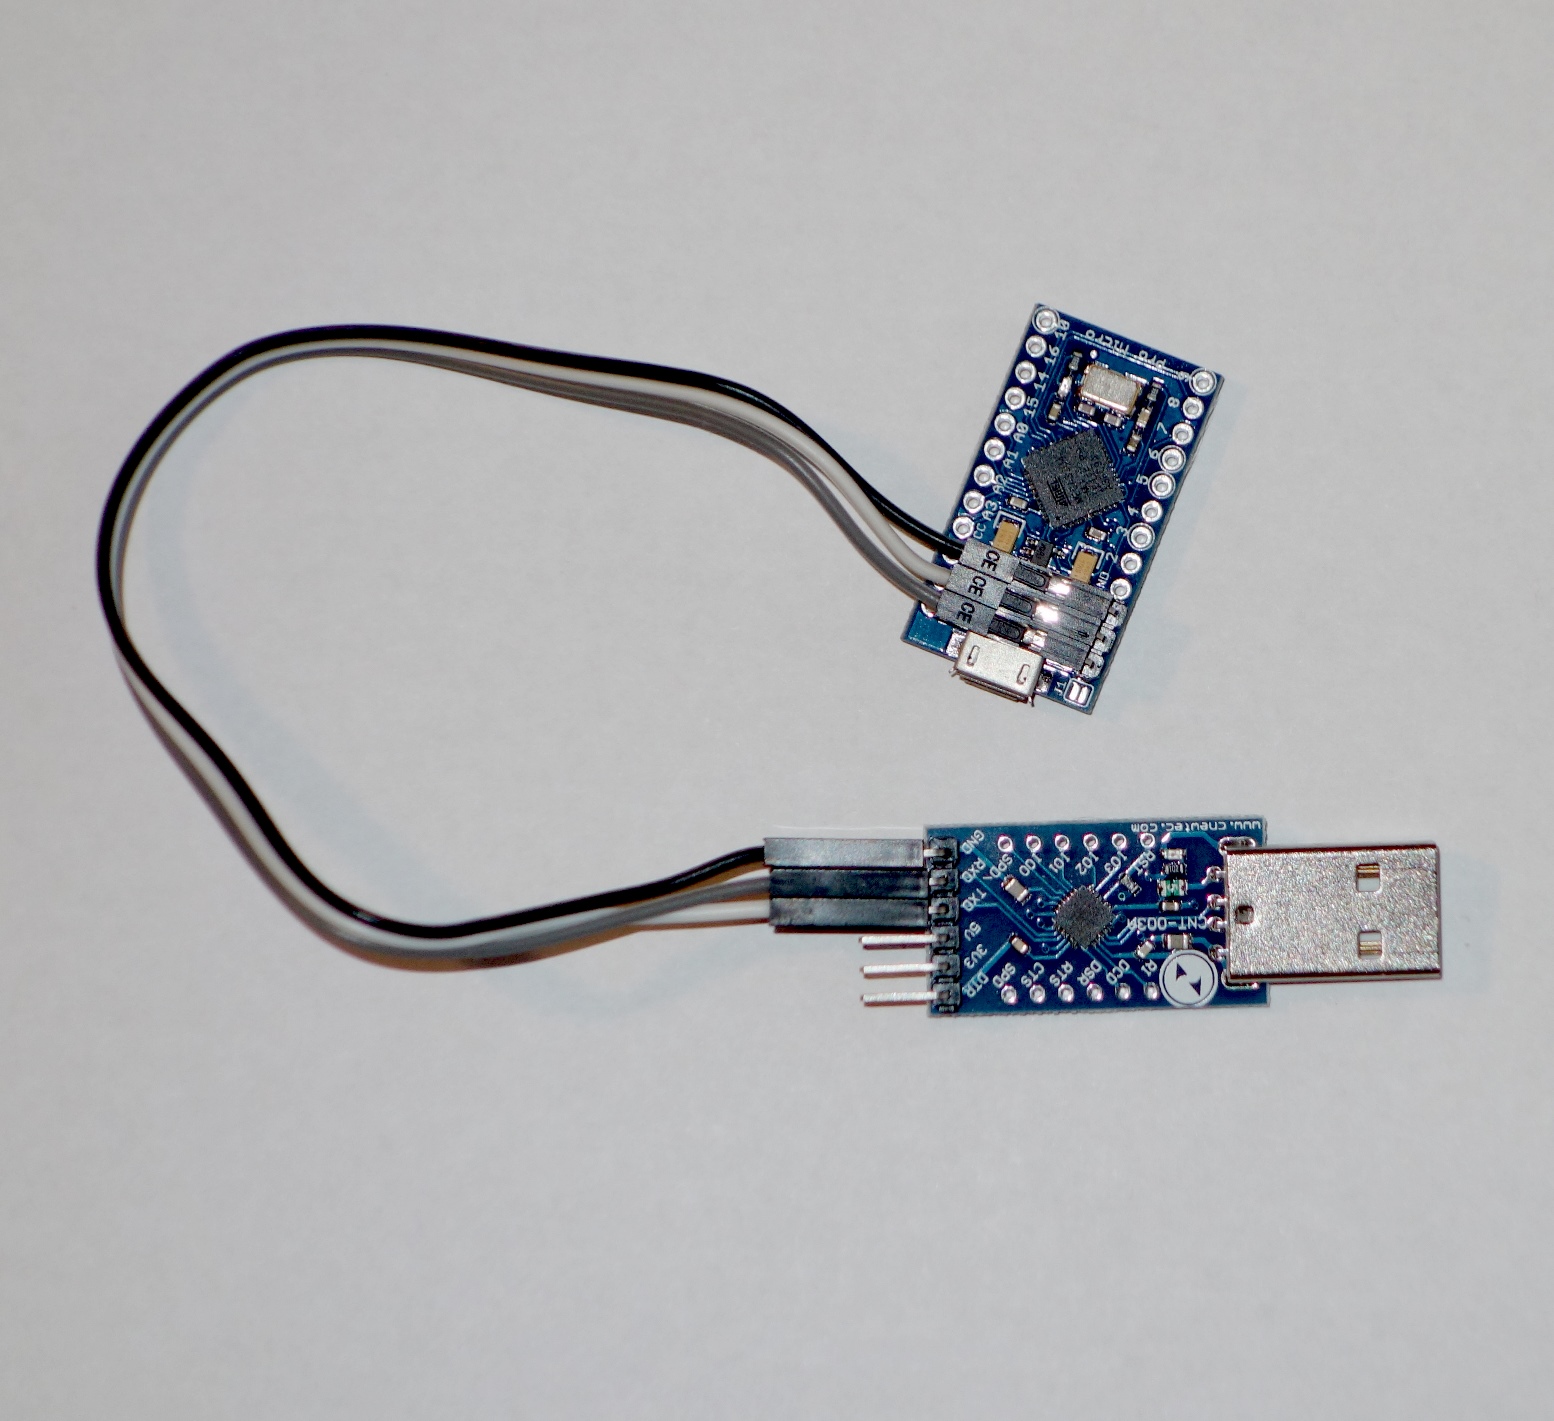 GIMX USB WHEEL ADAPTER - Logitech G27, G25, DFGT on PS4